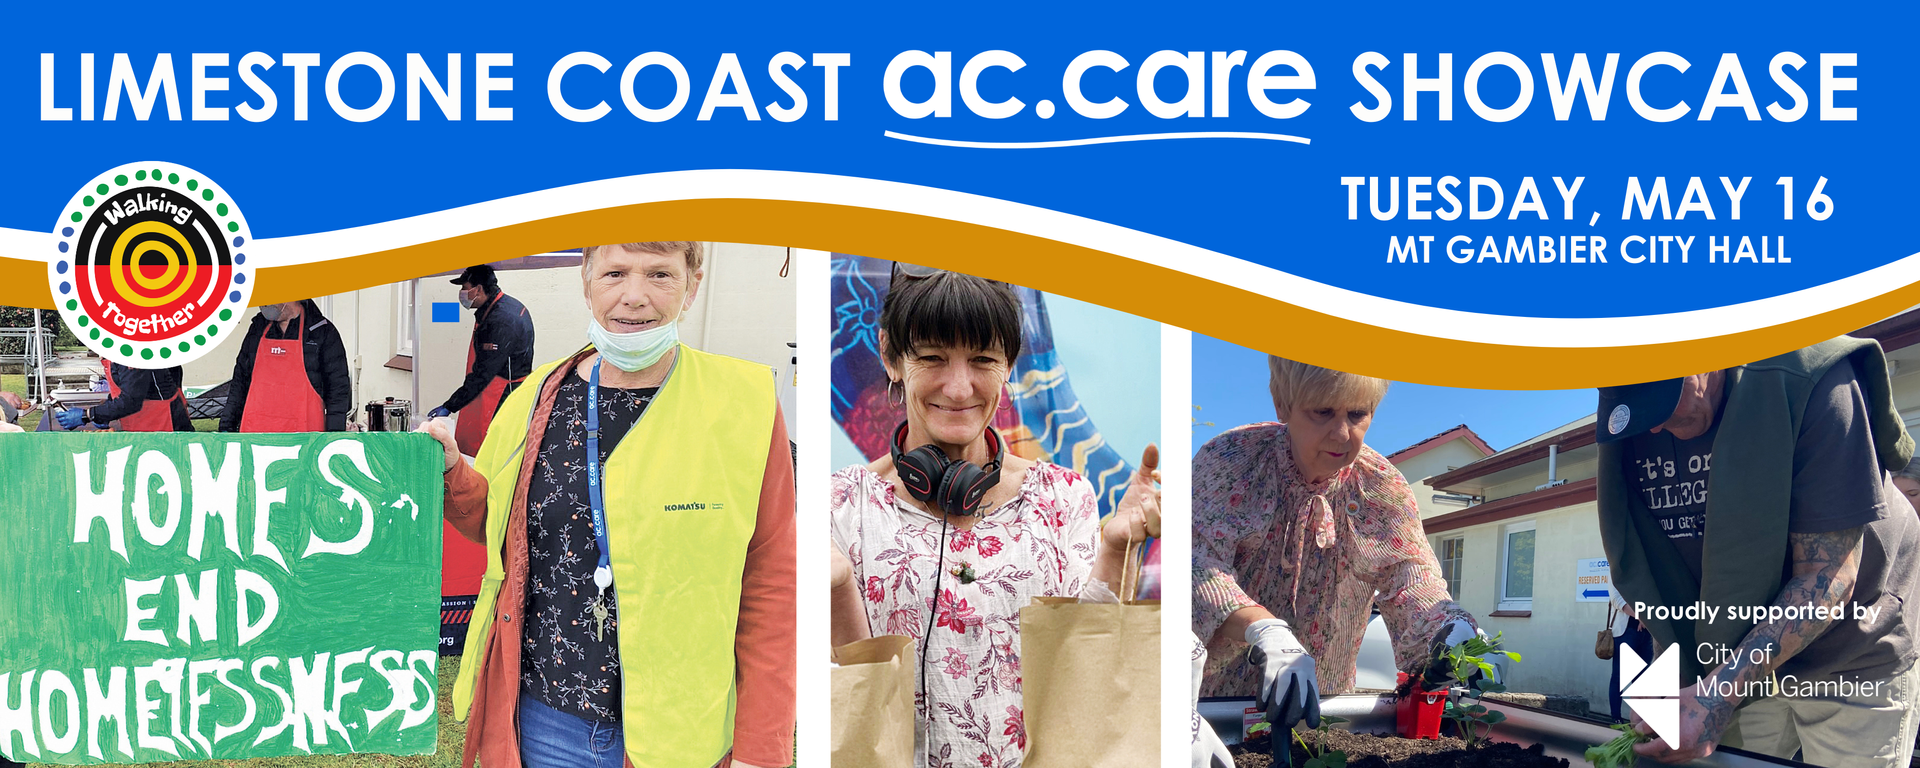 Limestone Coast ac.care Showcase